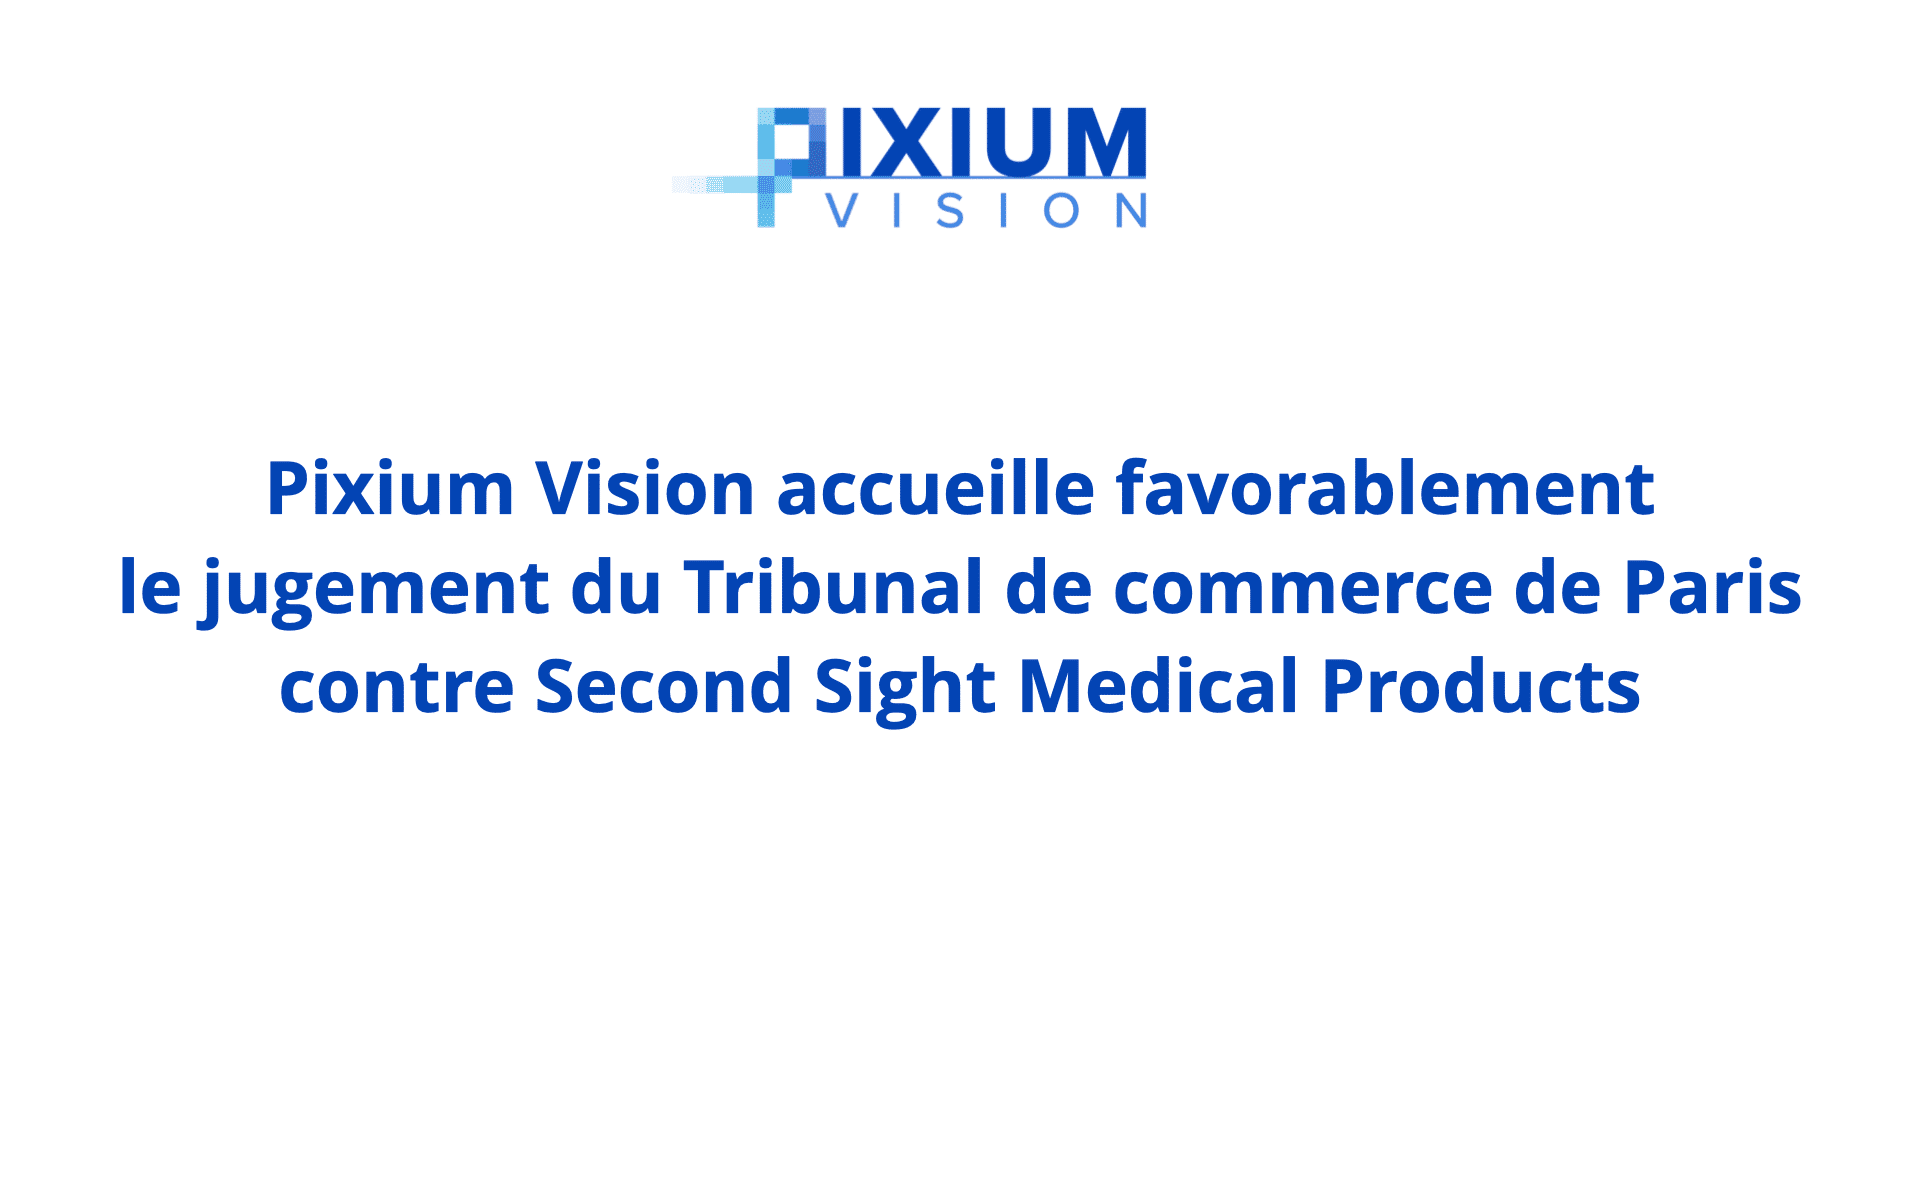 Pixium Vision accueille favorablement le jugement du Tribunal de commerce de Paris contre Second Sight Medical Products